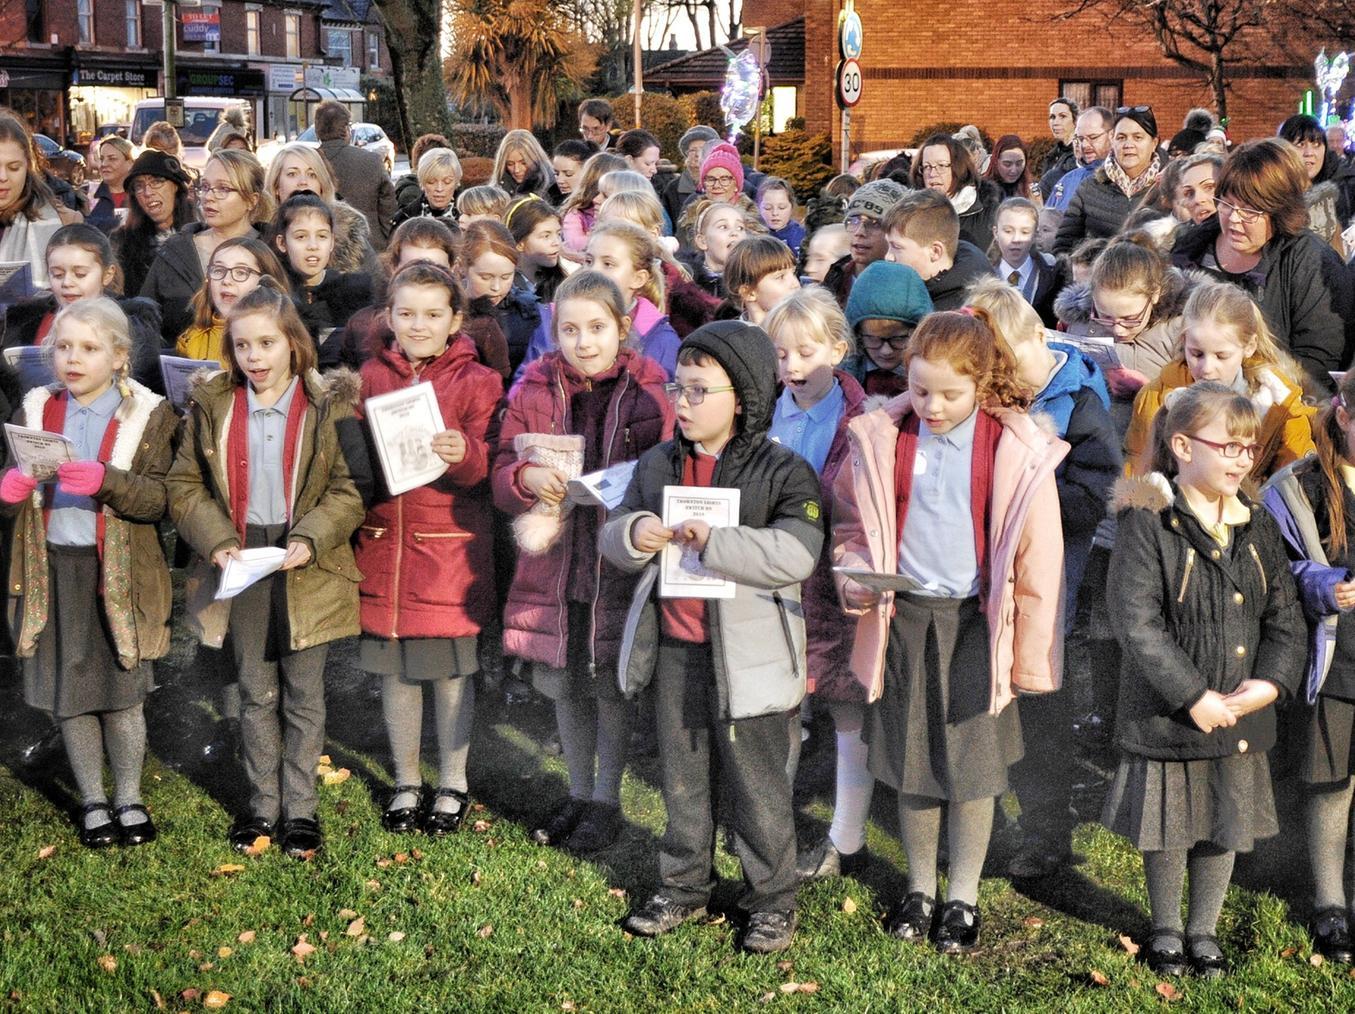 Carols were sung by school choirs